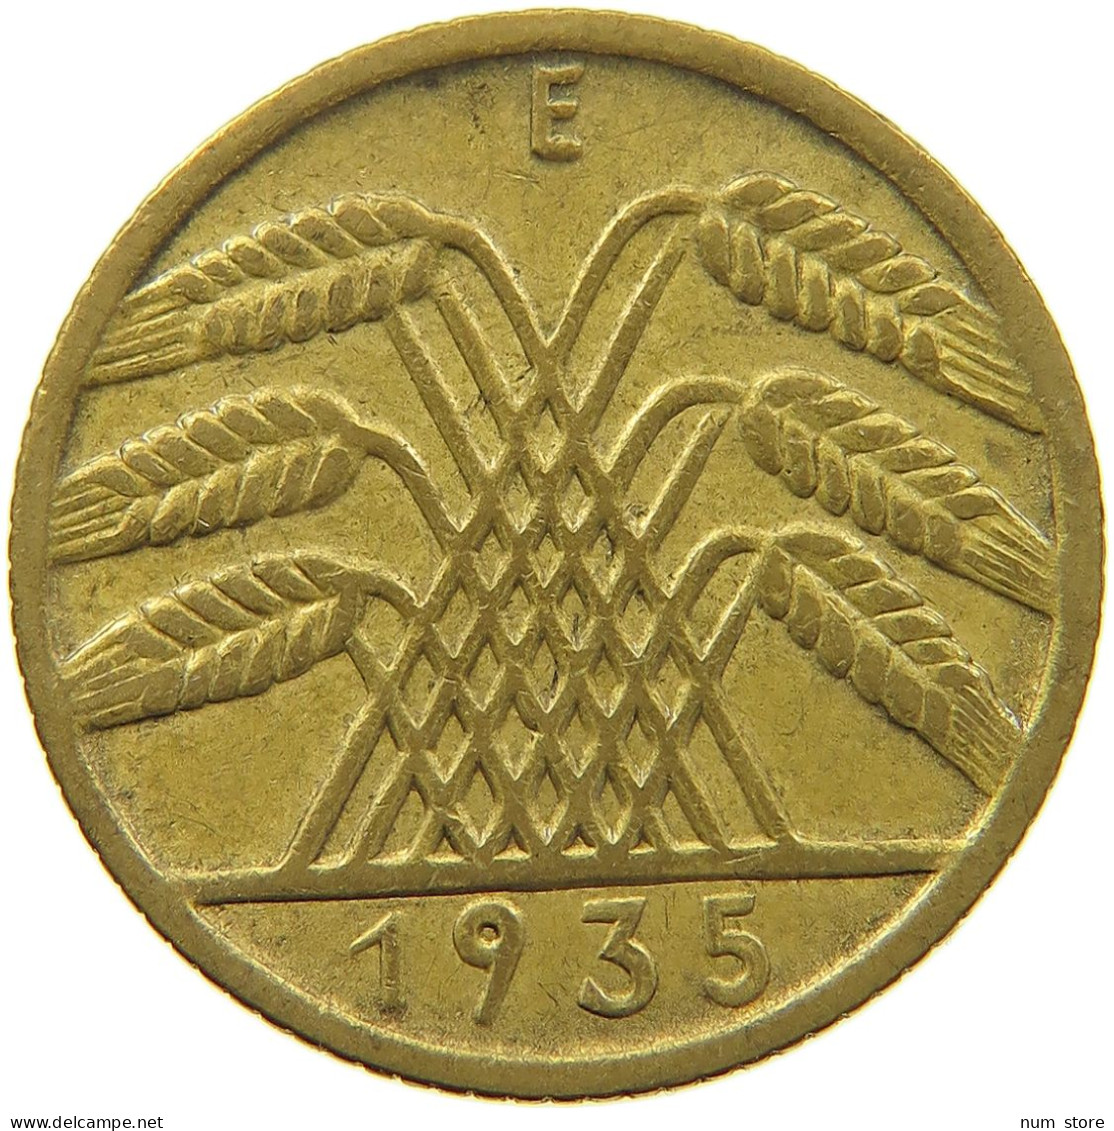 WEIMARER REPUBLIK 10 PFENNIG 1935 E  #MA 098942 - 10 Rentenpfennig & 10 Reichspfennig